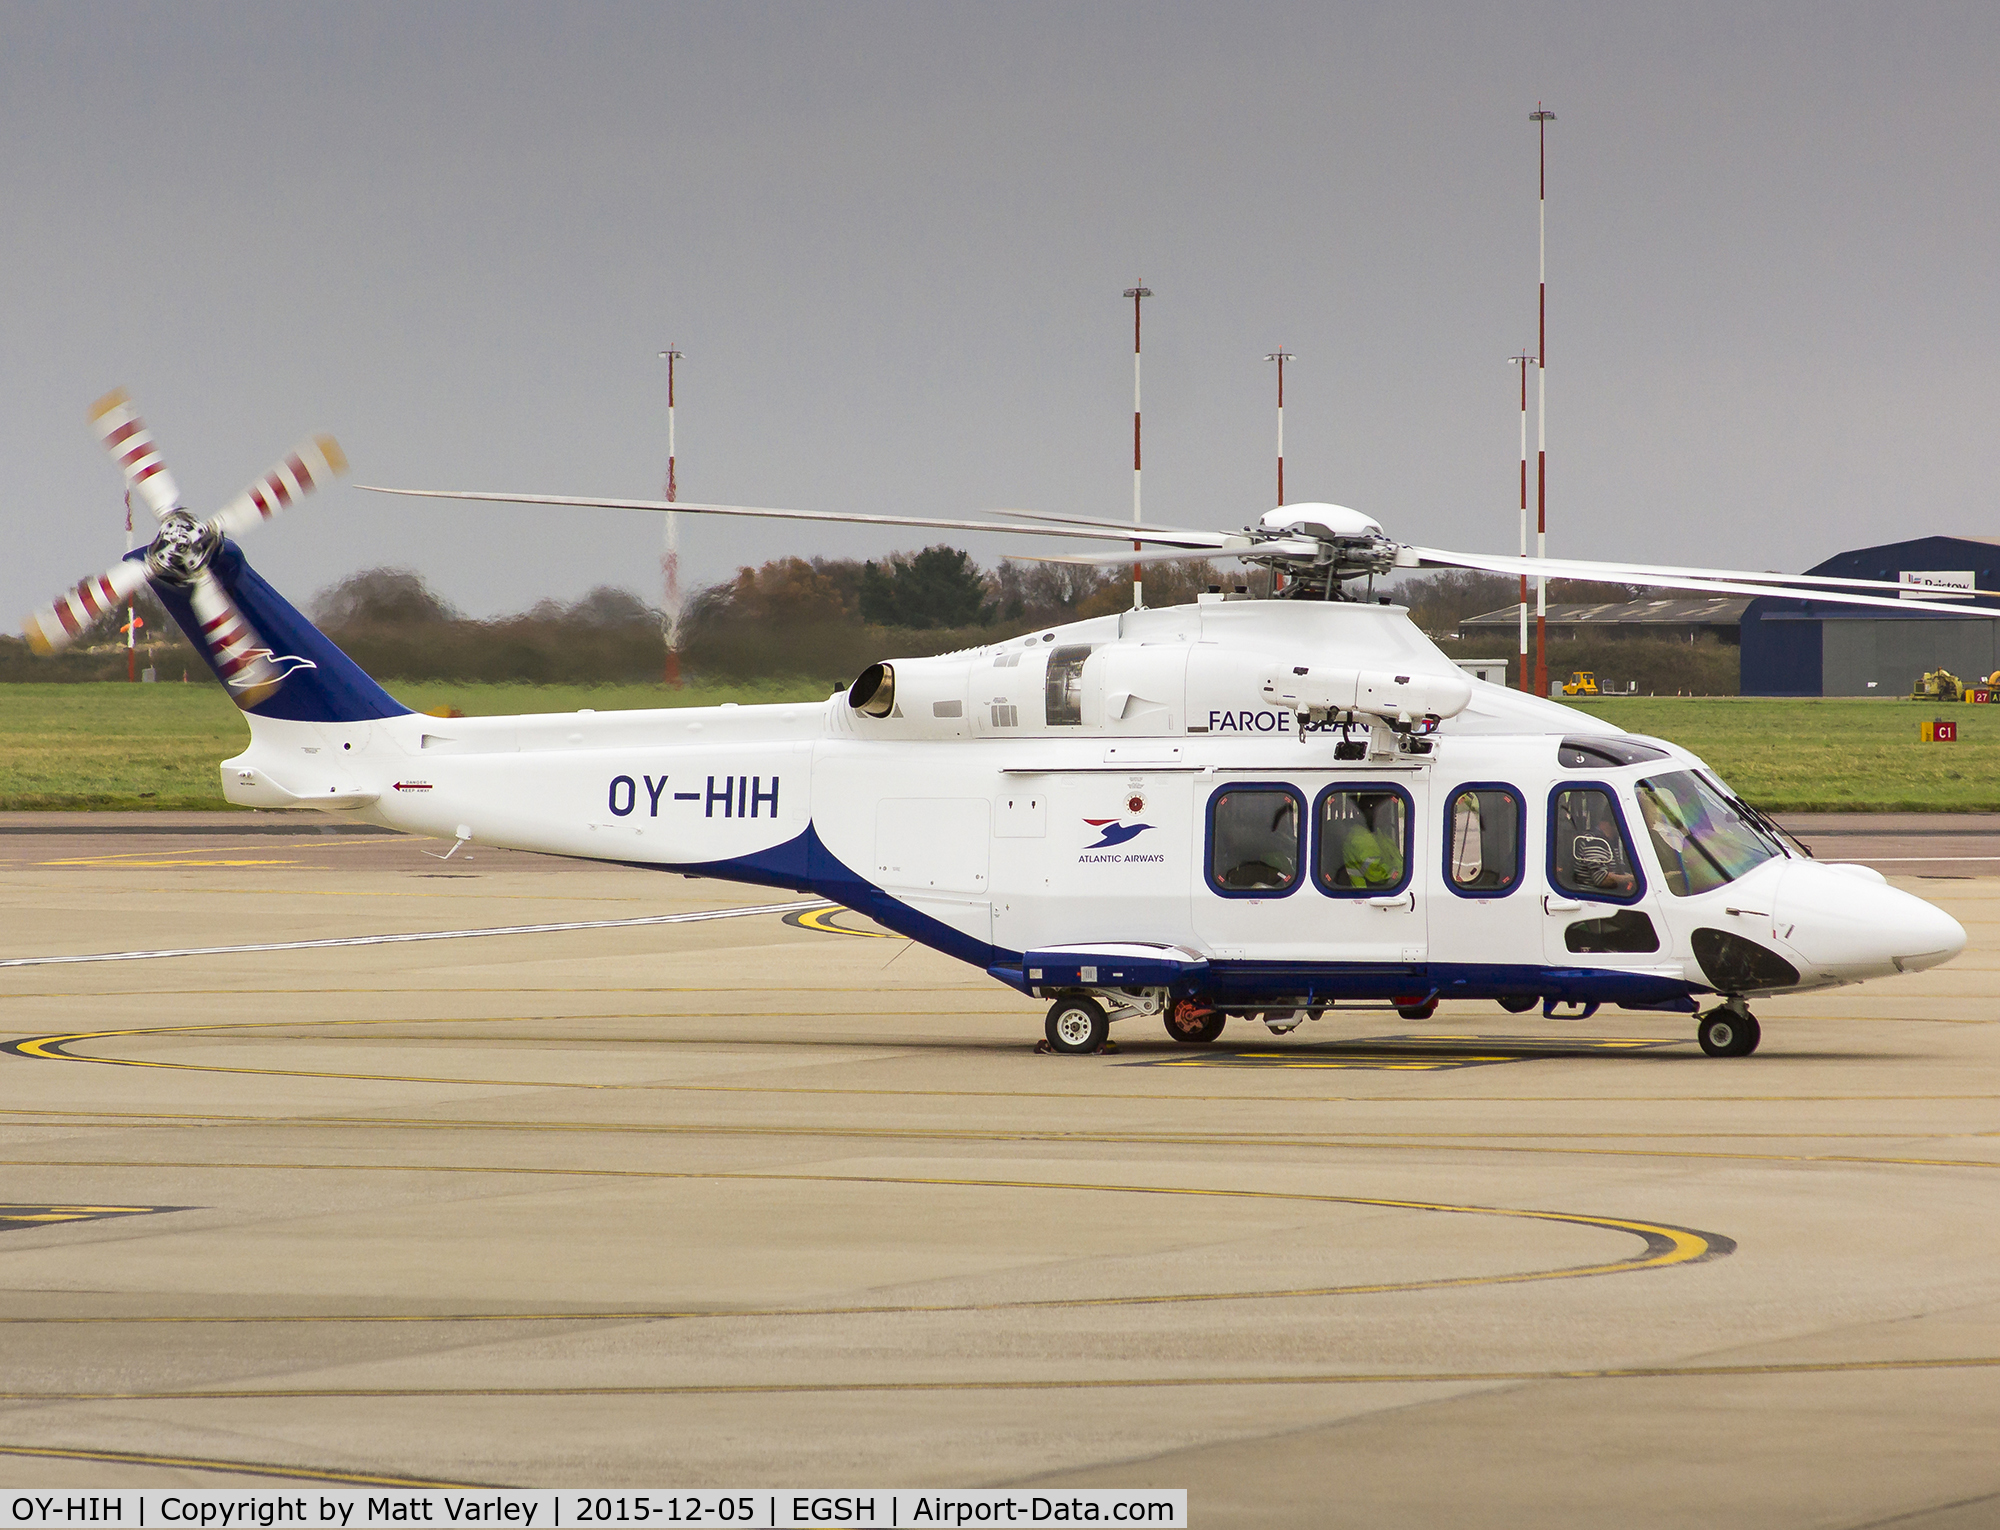 OY-HIH, 2015 AgustaWestland AW-139 C/N 31718, Brand new AW139 - Registered 02/12/2015